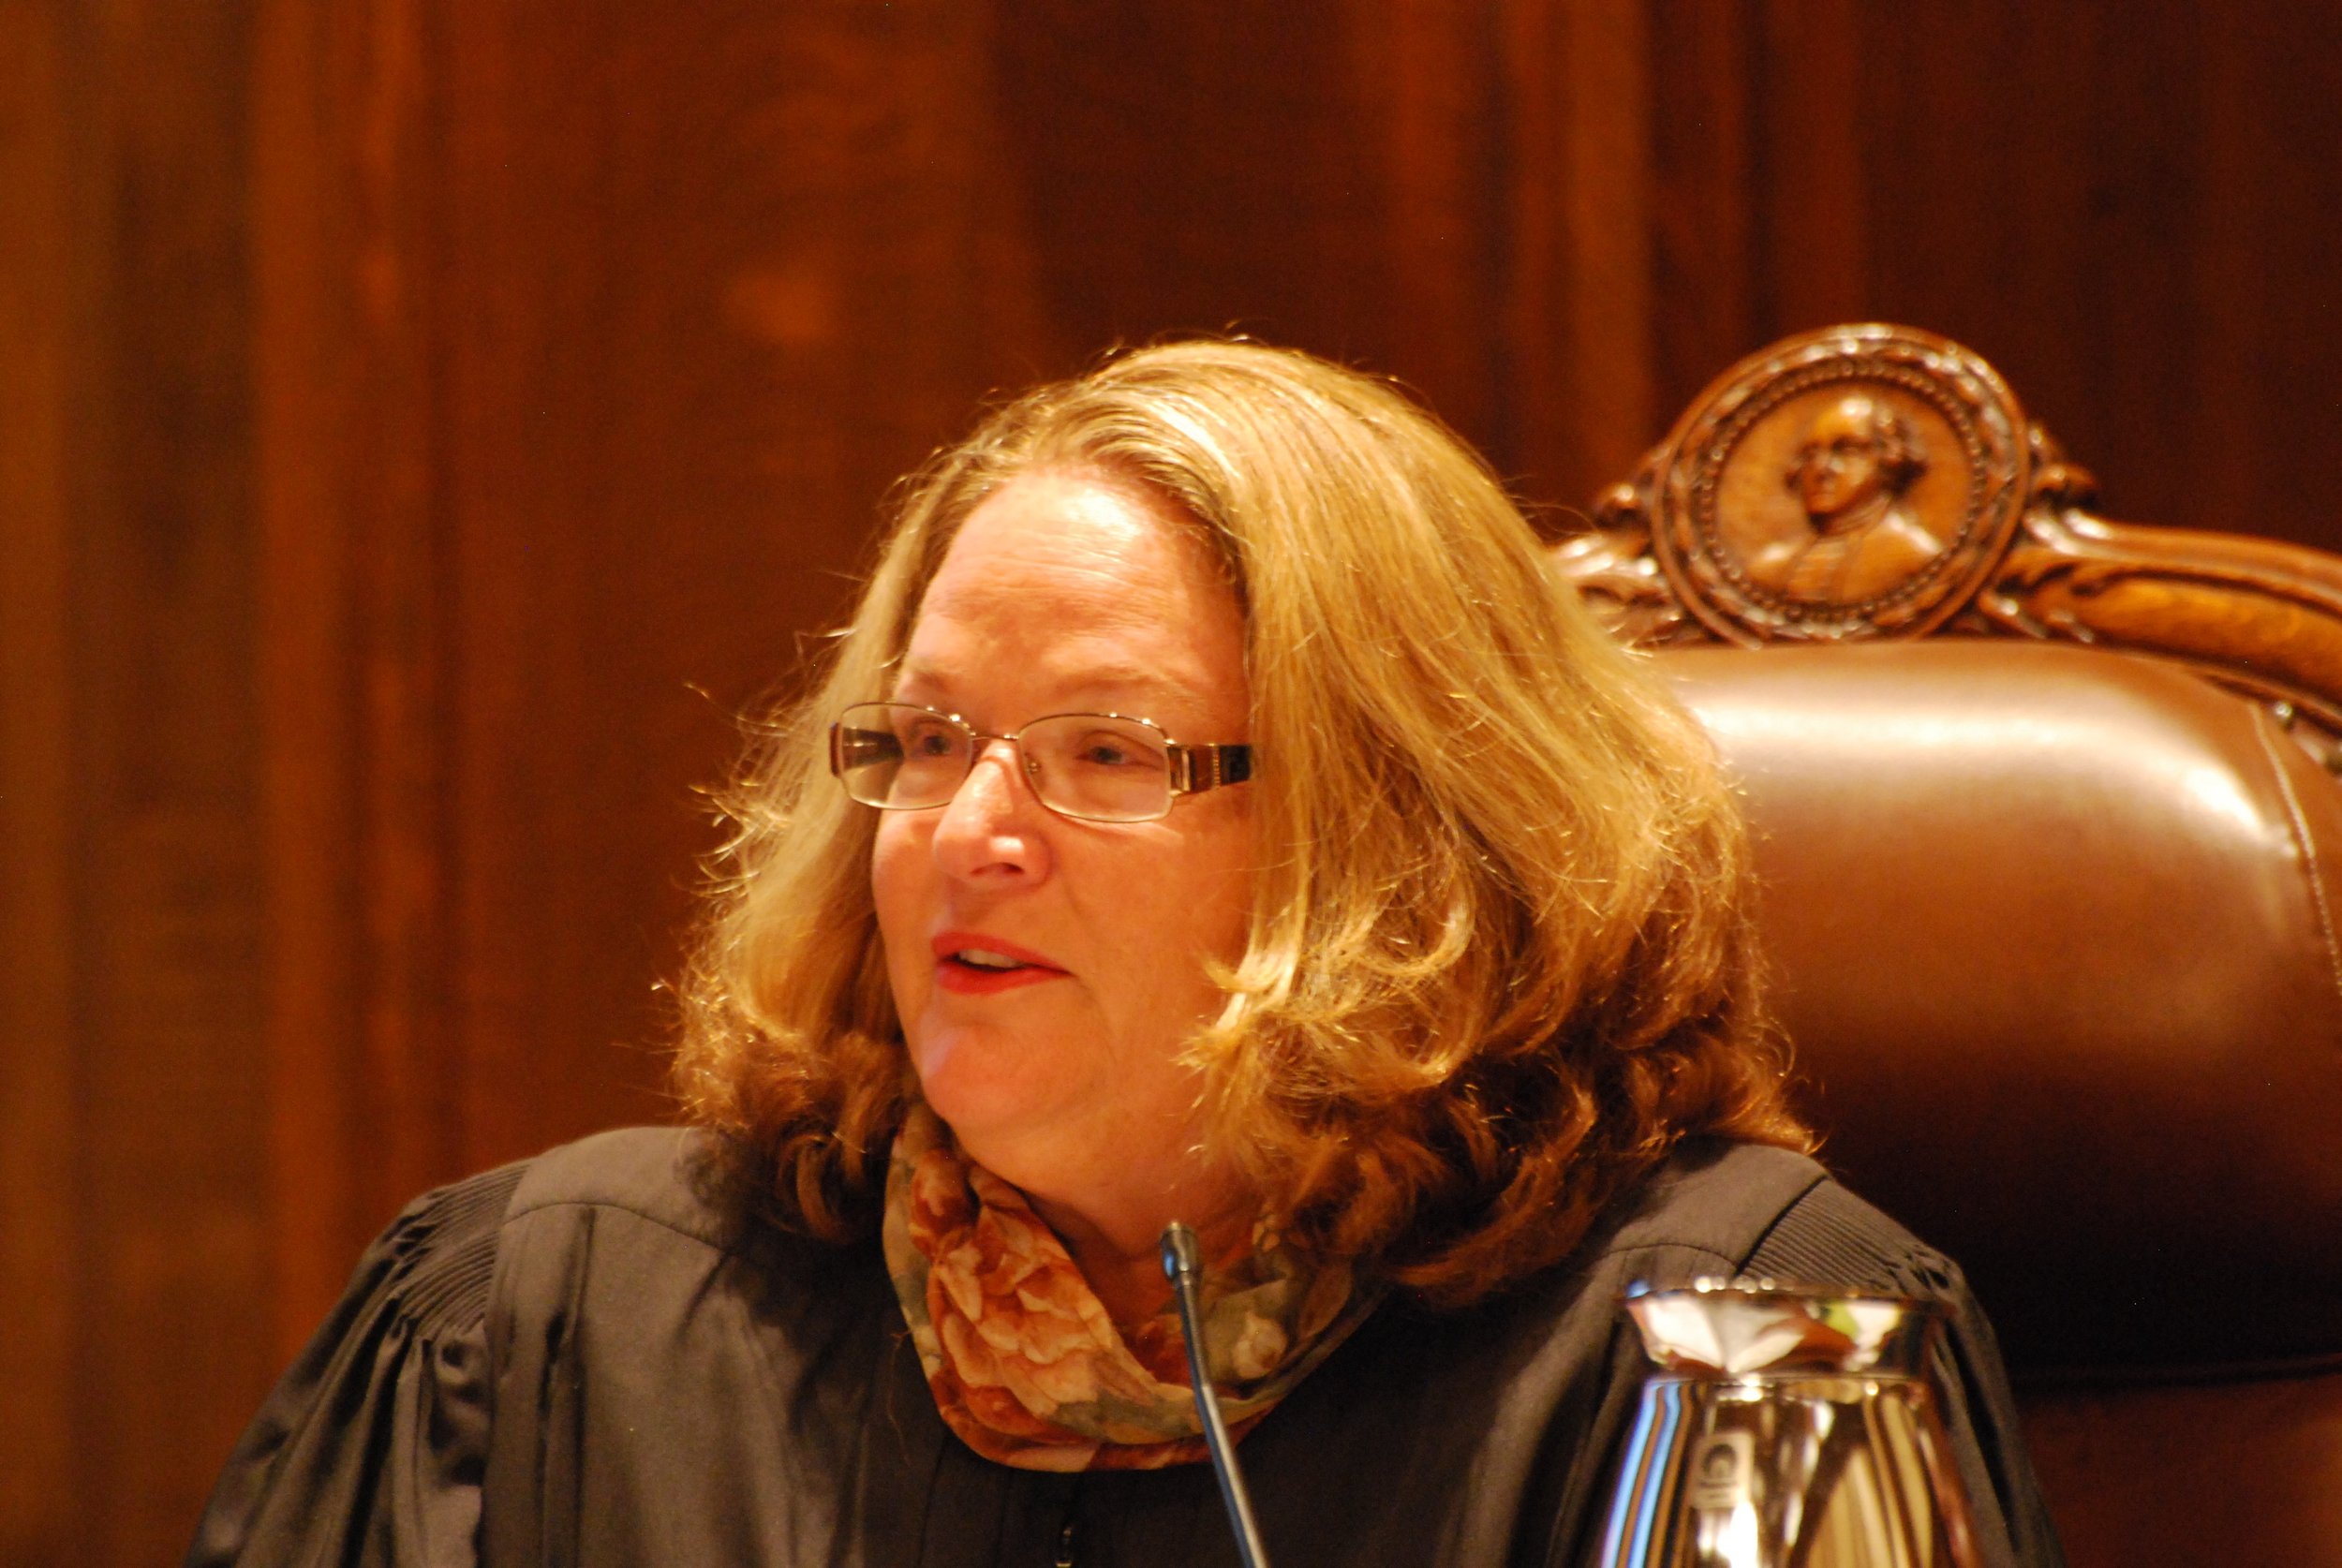 Seattle Justice Mary Fairhurst